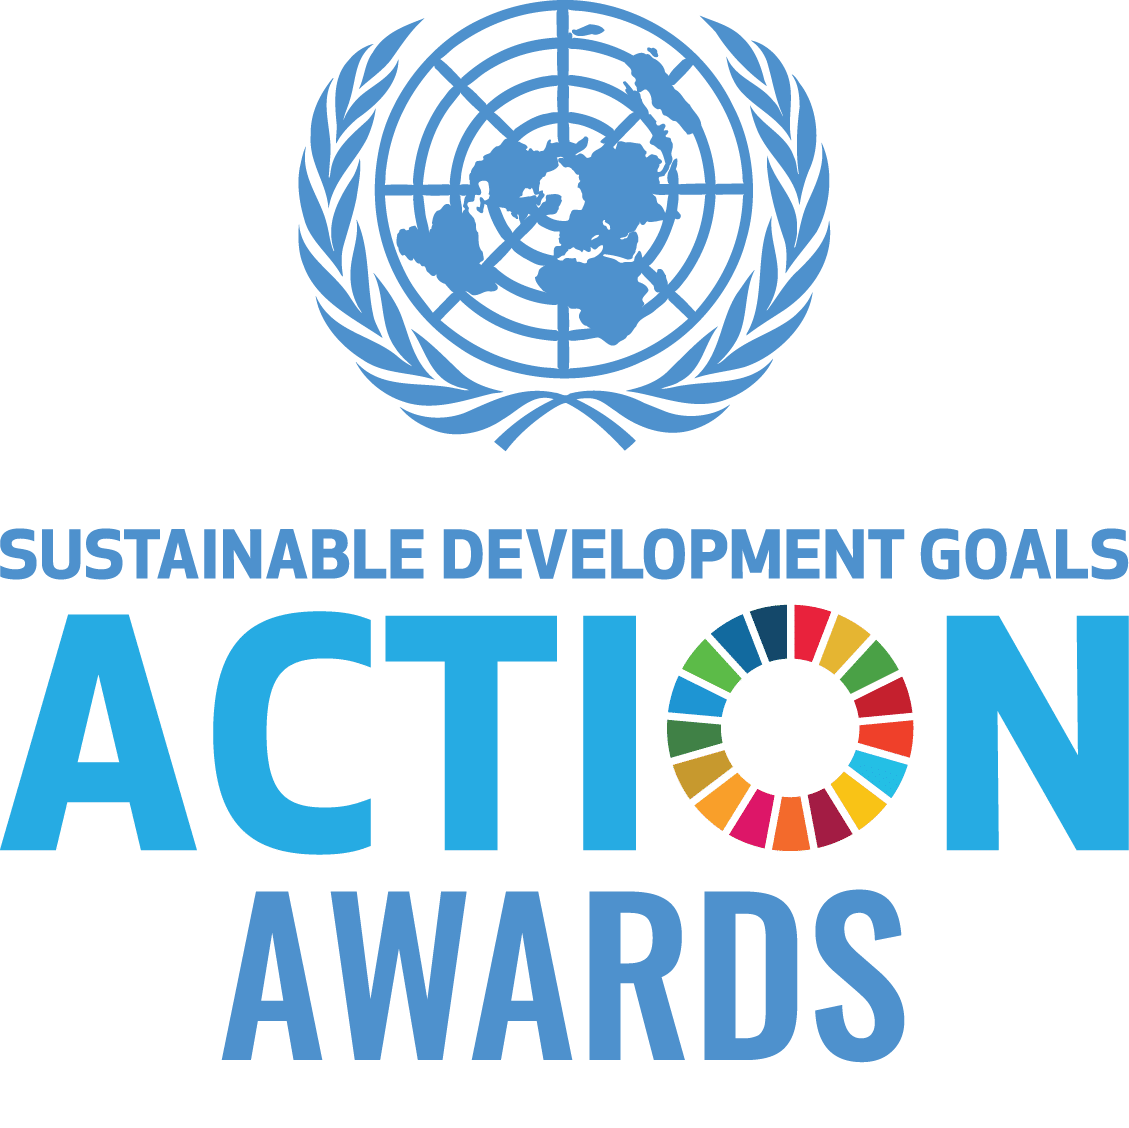 un_sdg_action_awards